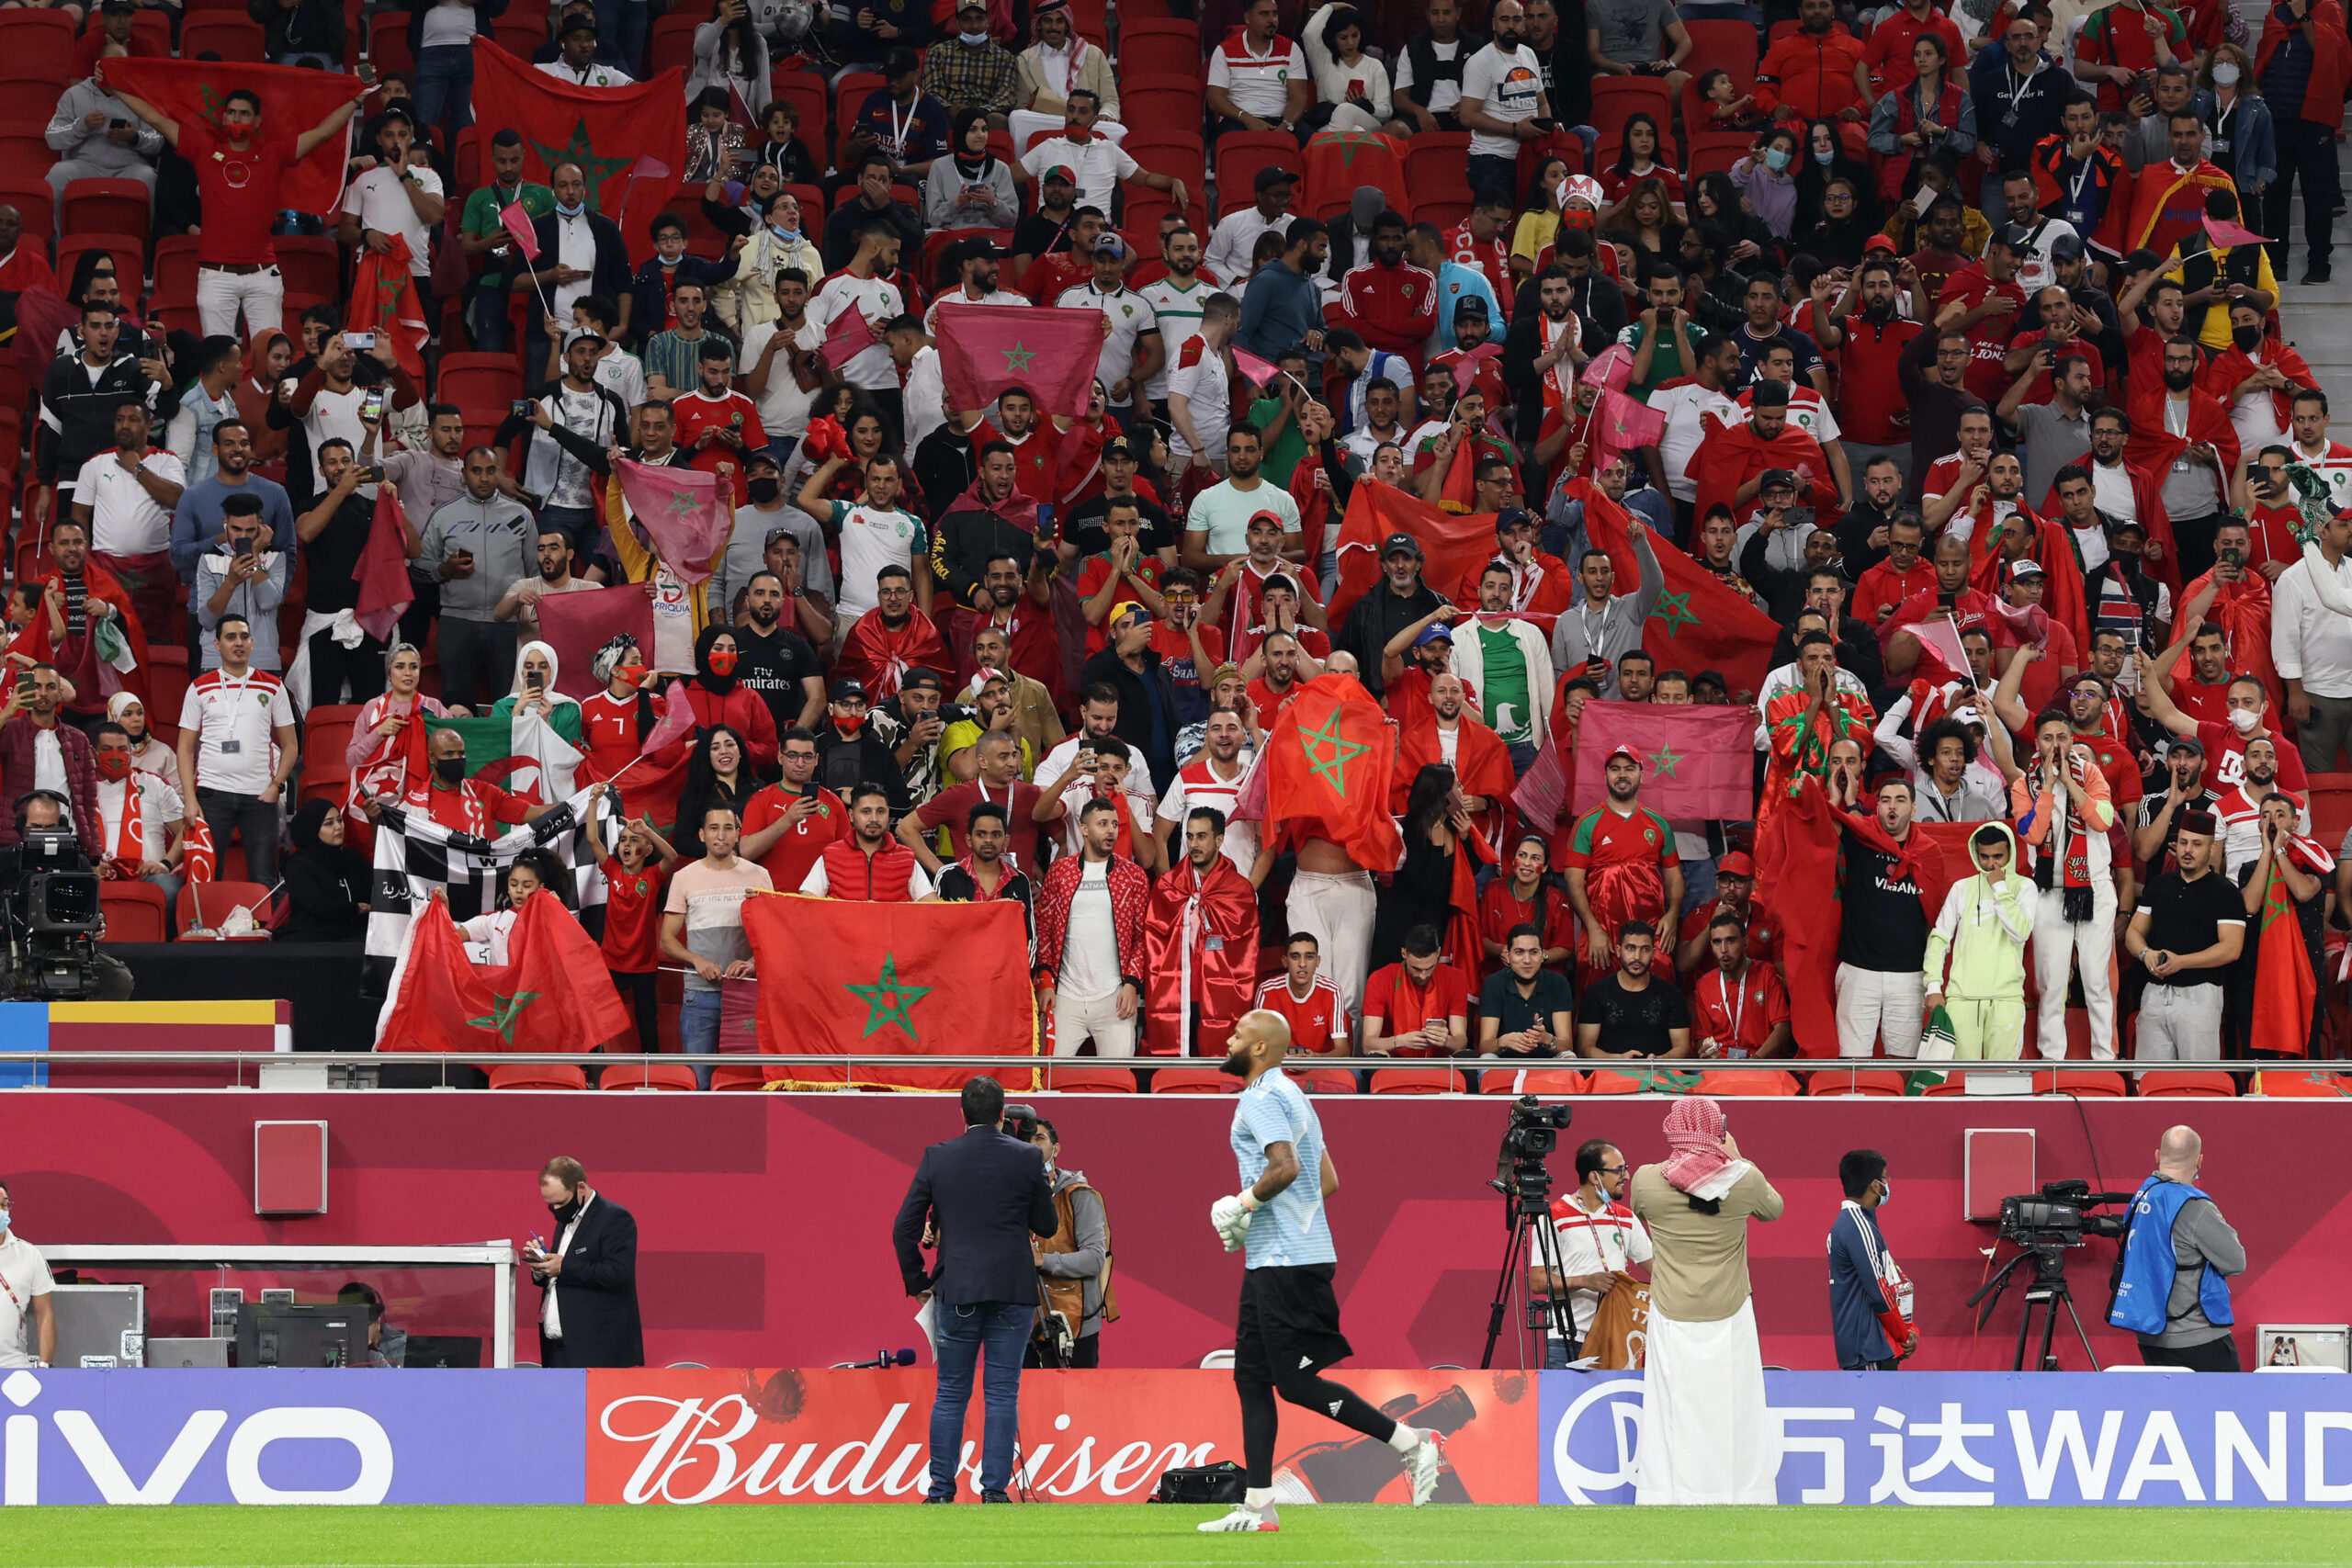 تذاكر مجانية للجماهير المغربية قبل انطلاق مباراة كندا